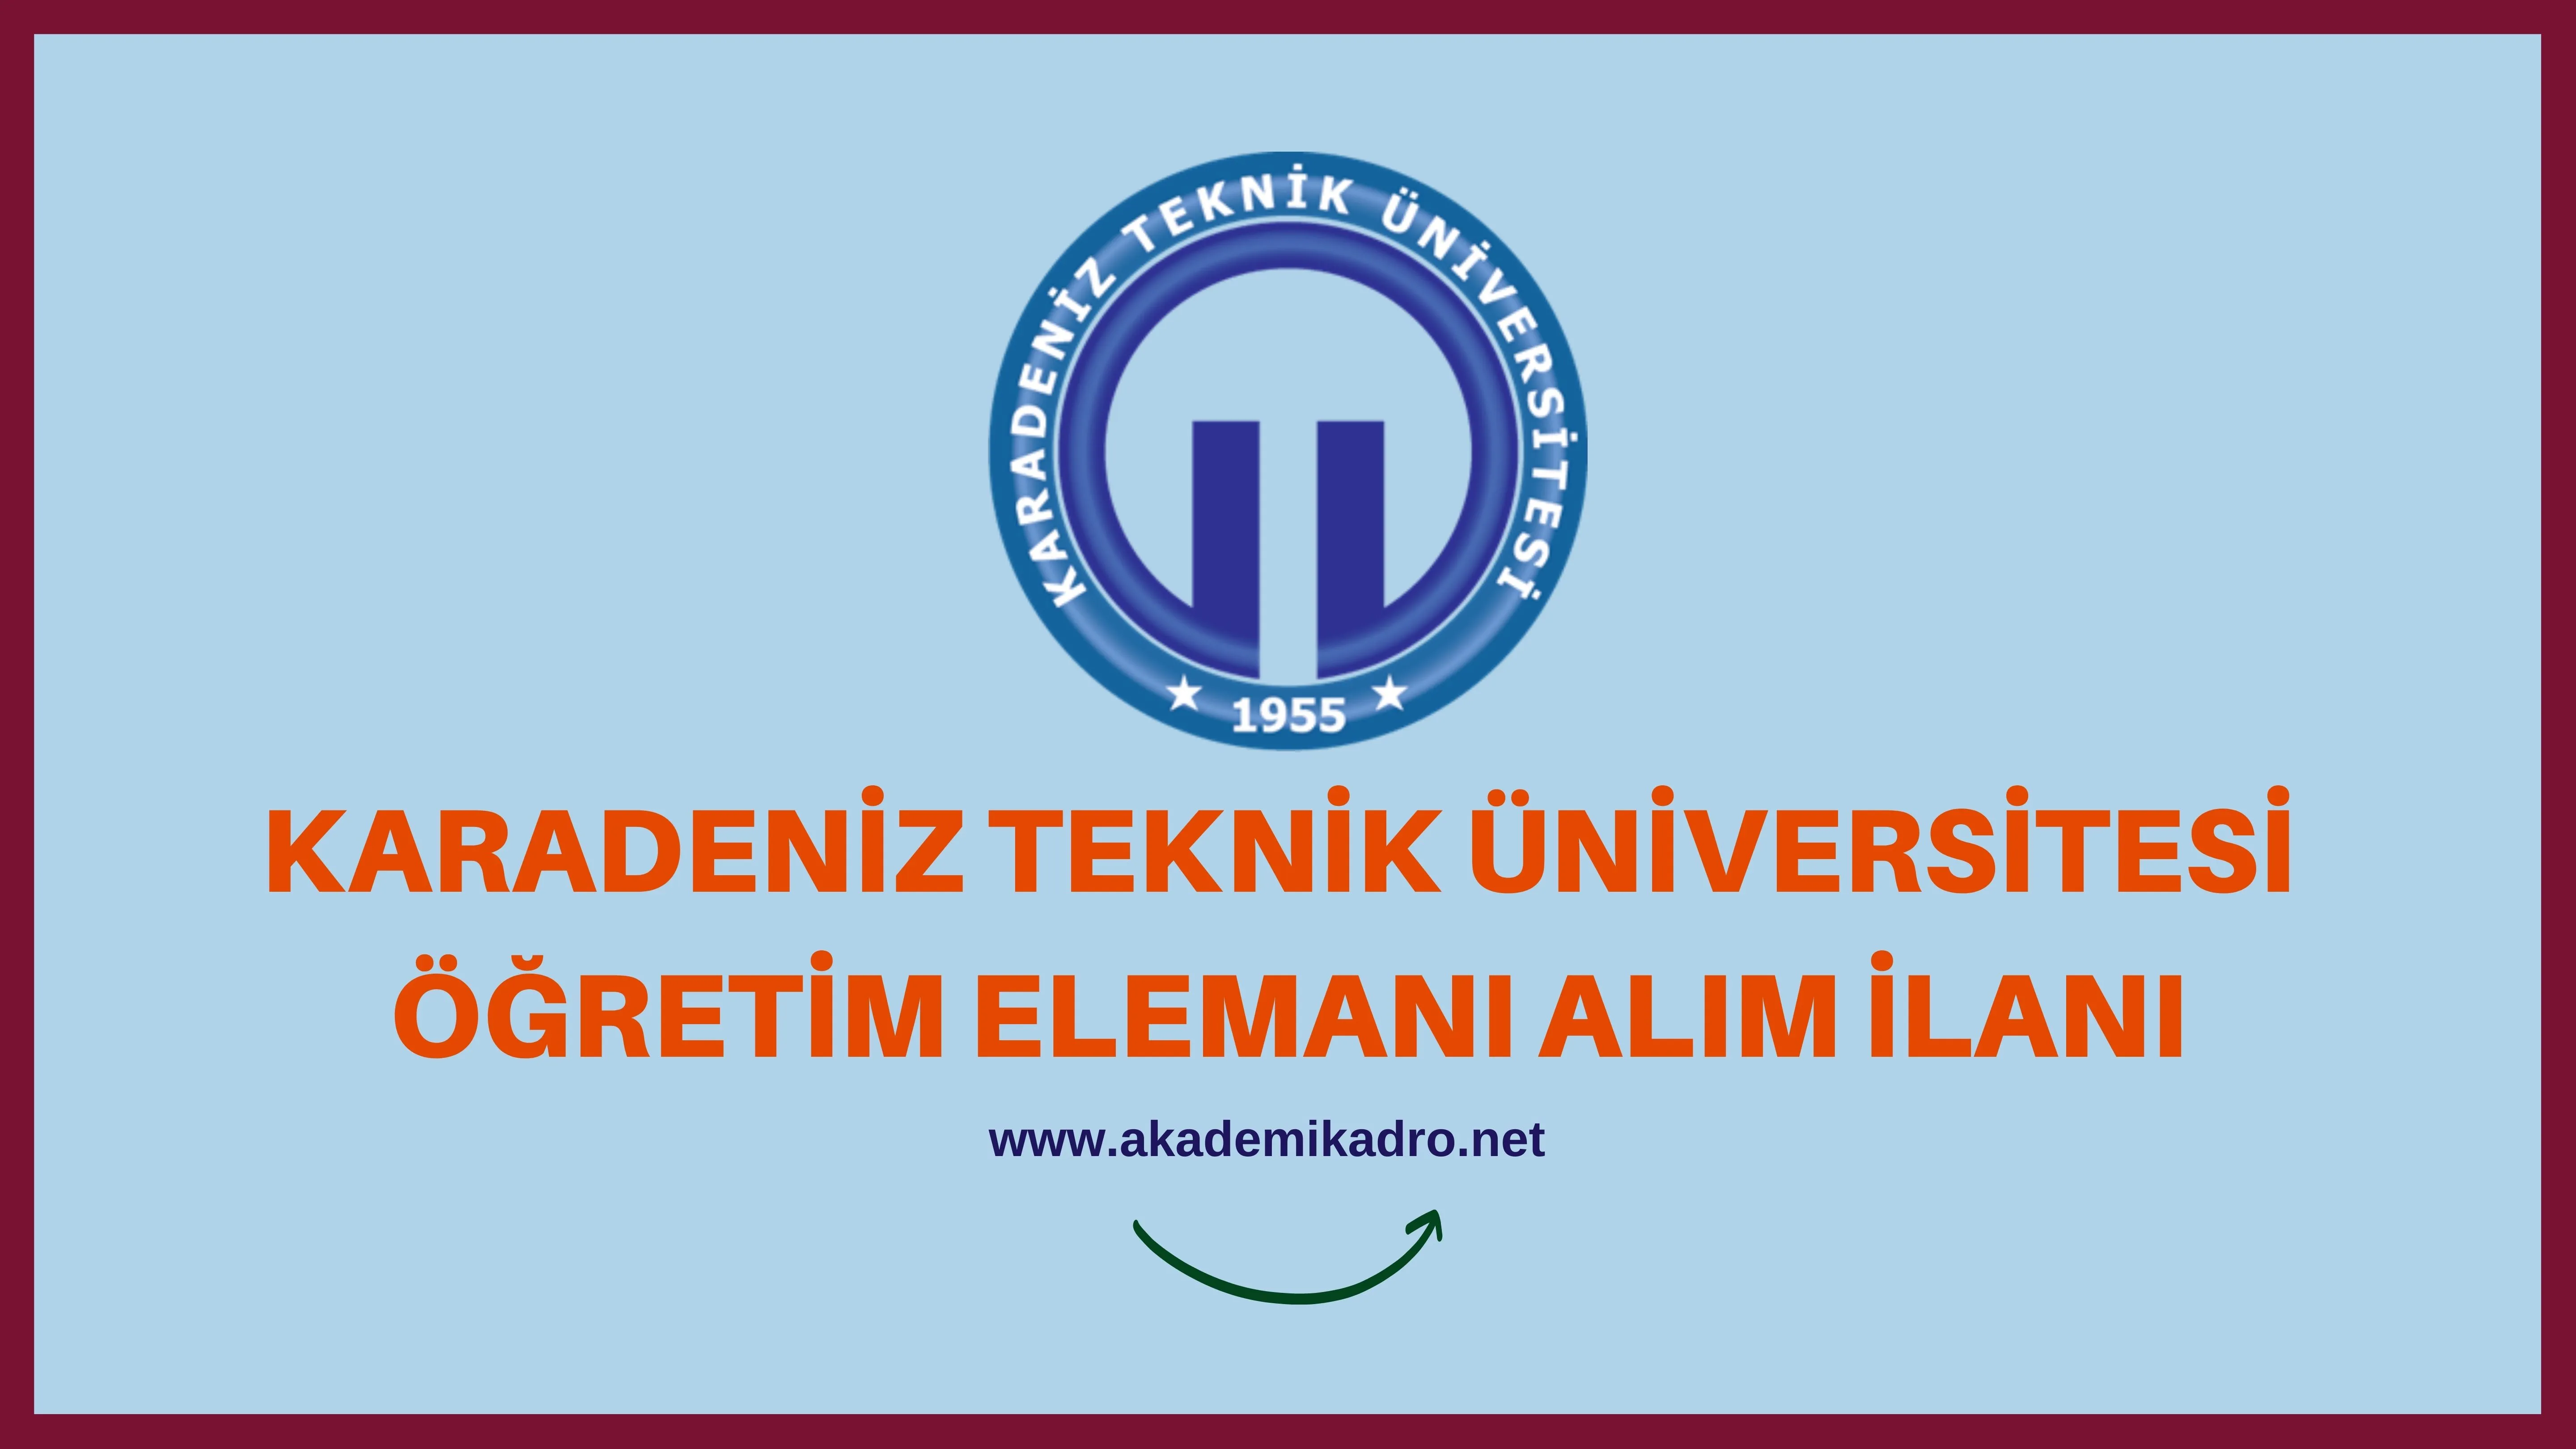 Karadeniz Teknik Üniversitesi 7 Araştırma görevlisi ve çeşitli branşlarda 12 Öğretim üyesi alacak.